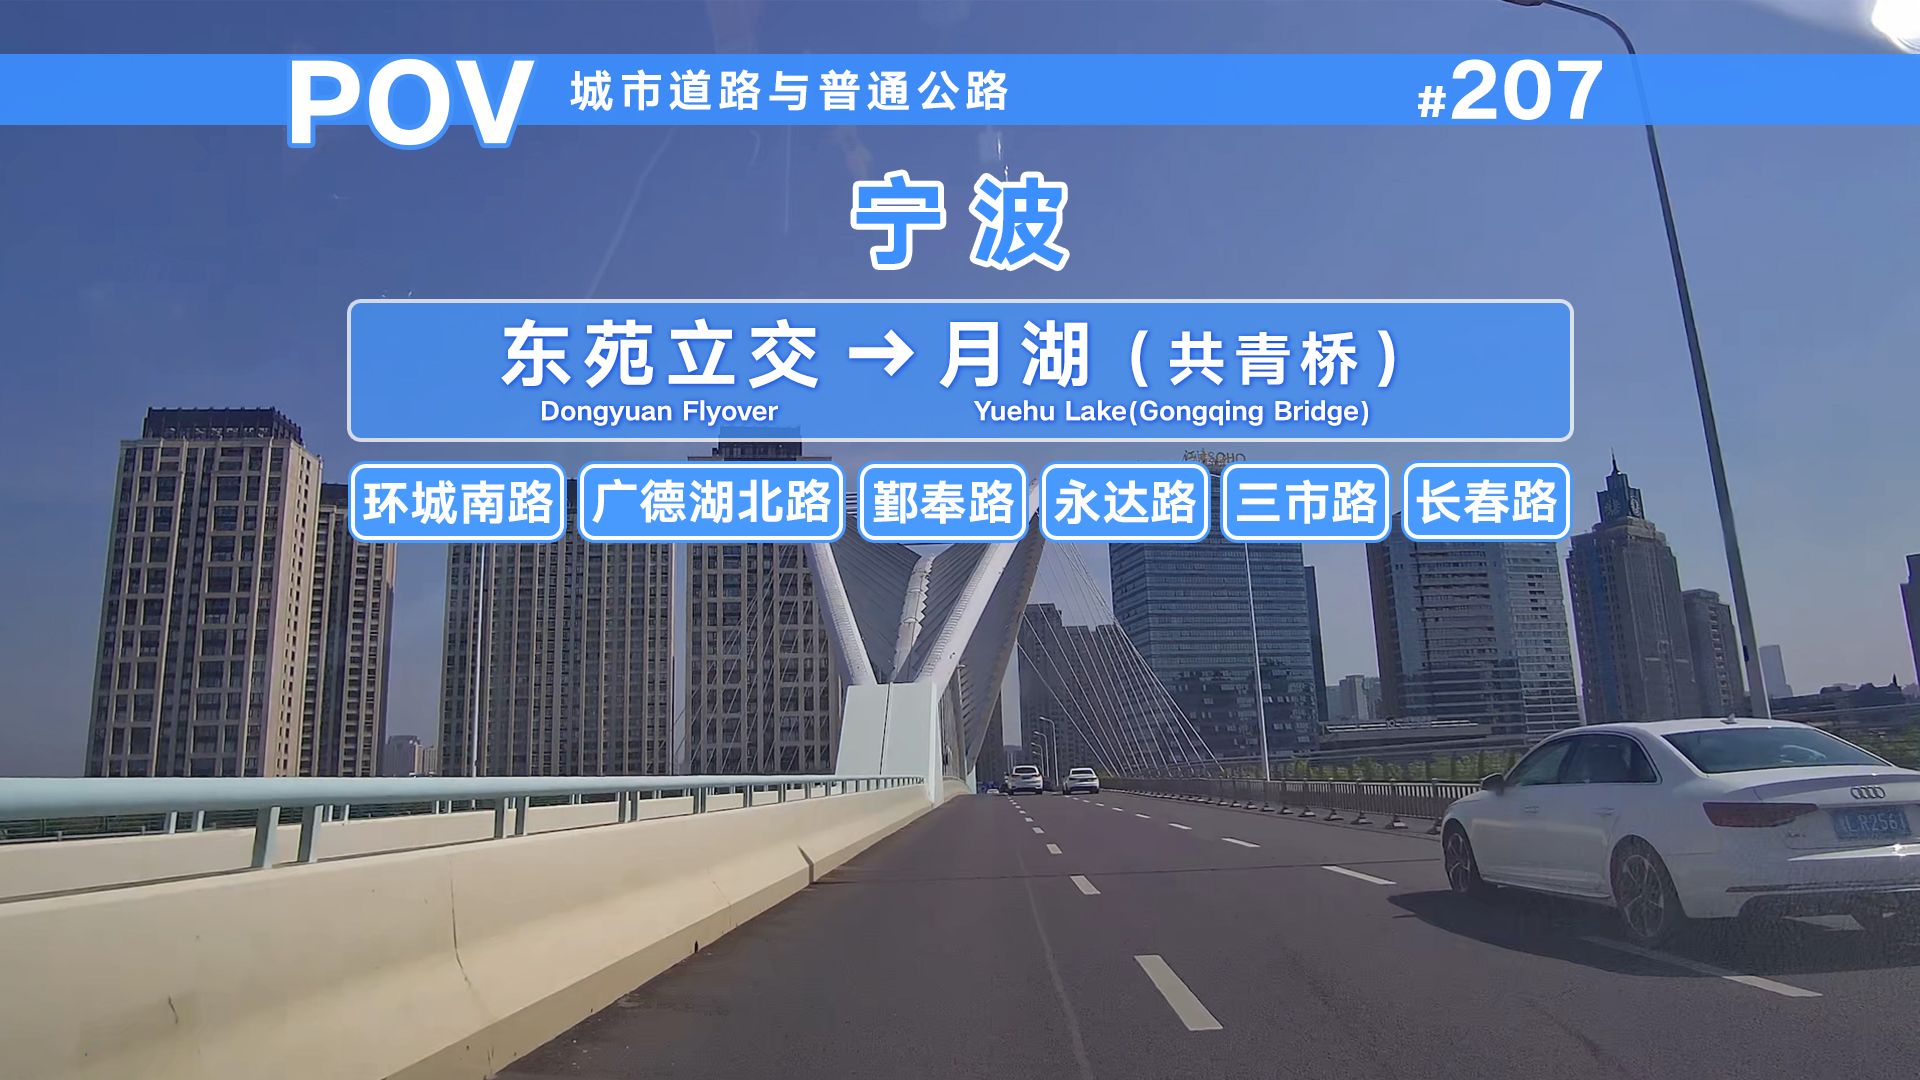 【POV】整体连接城市主干，宁波中南部城区的主要集散通道——环城南路